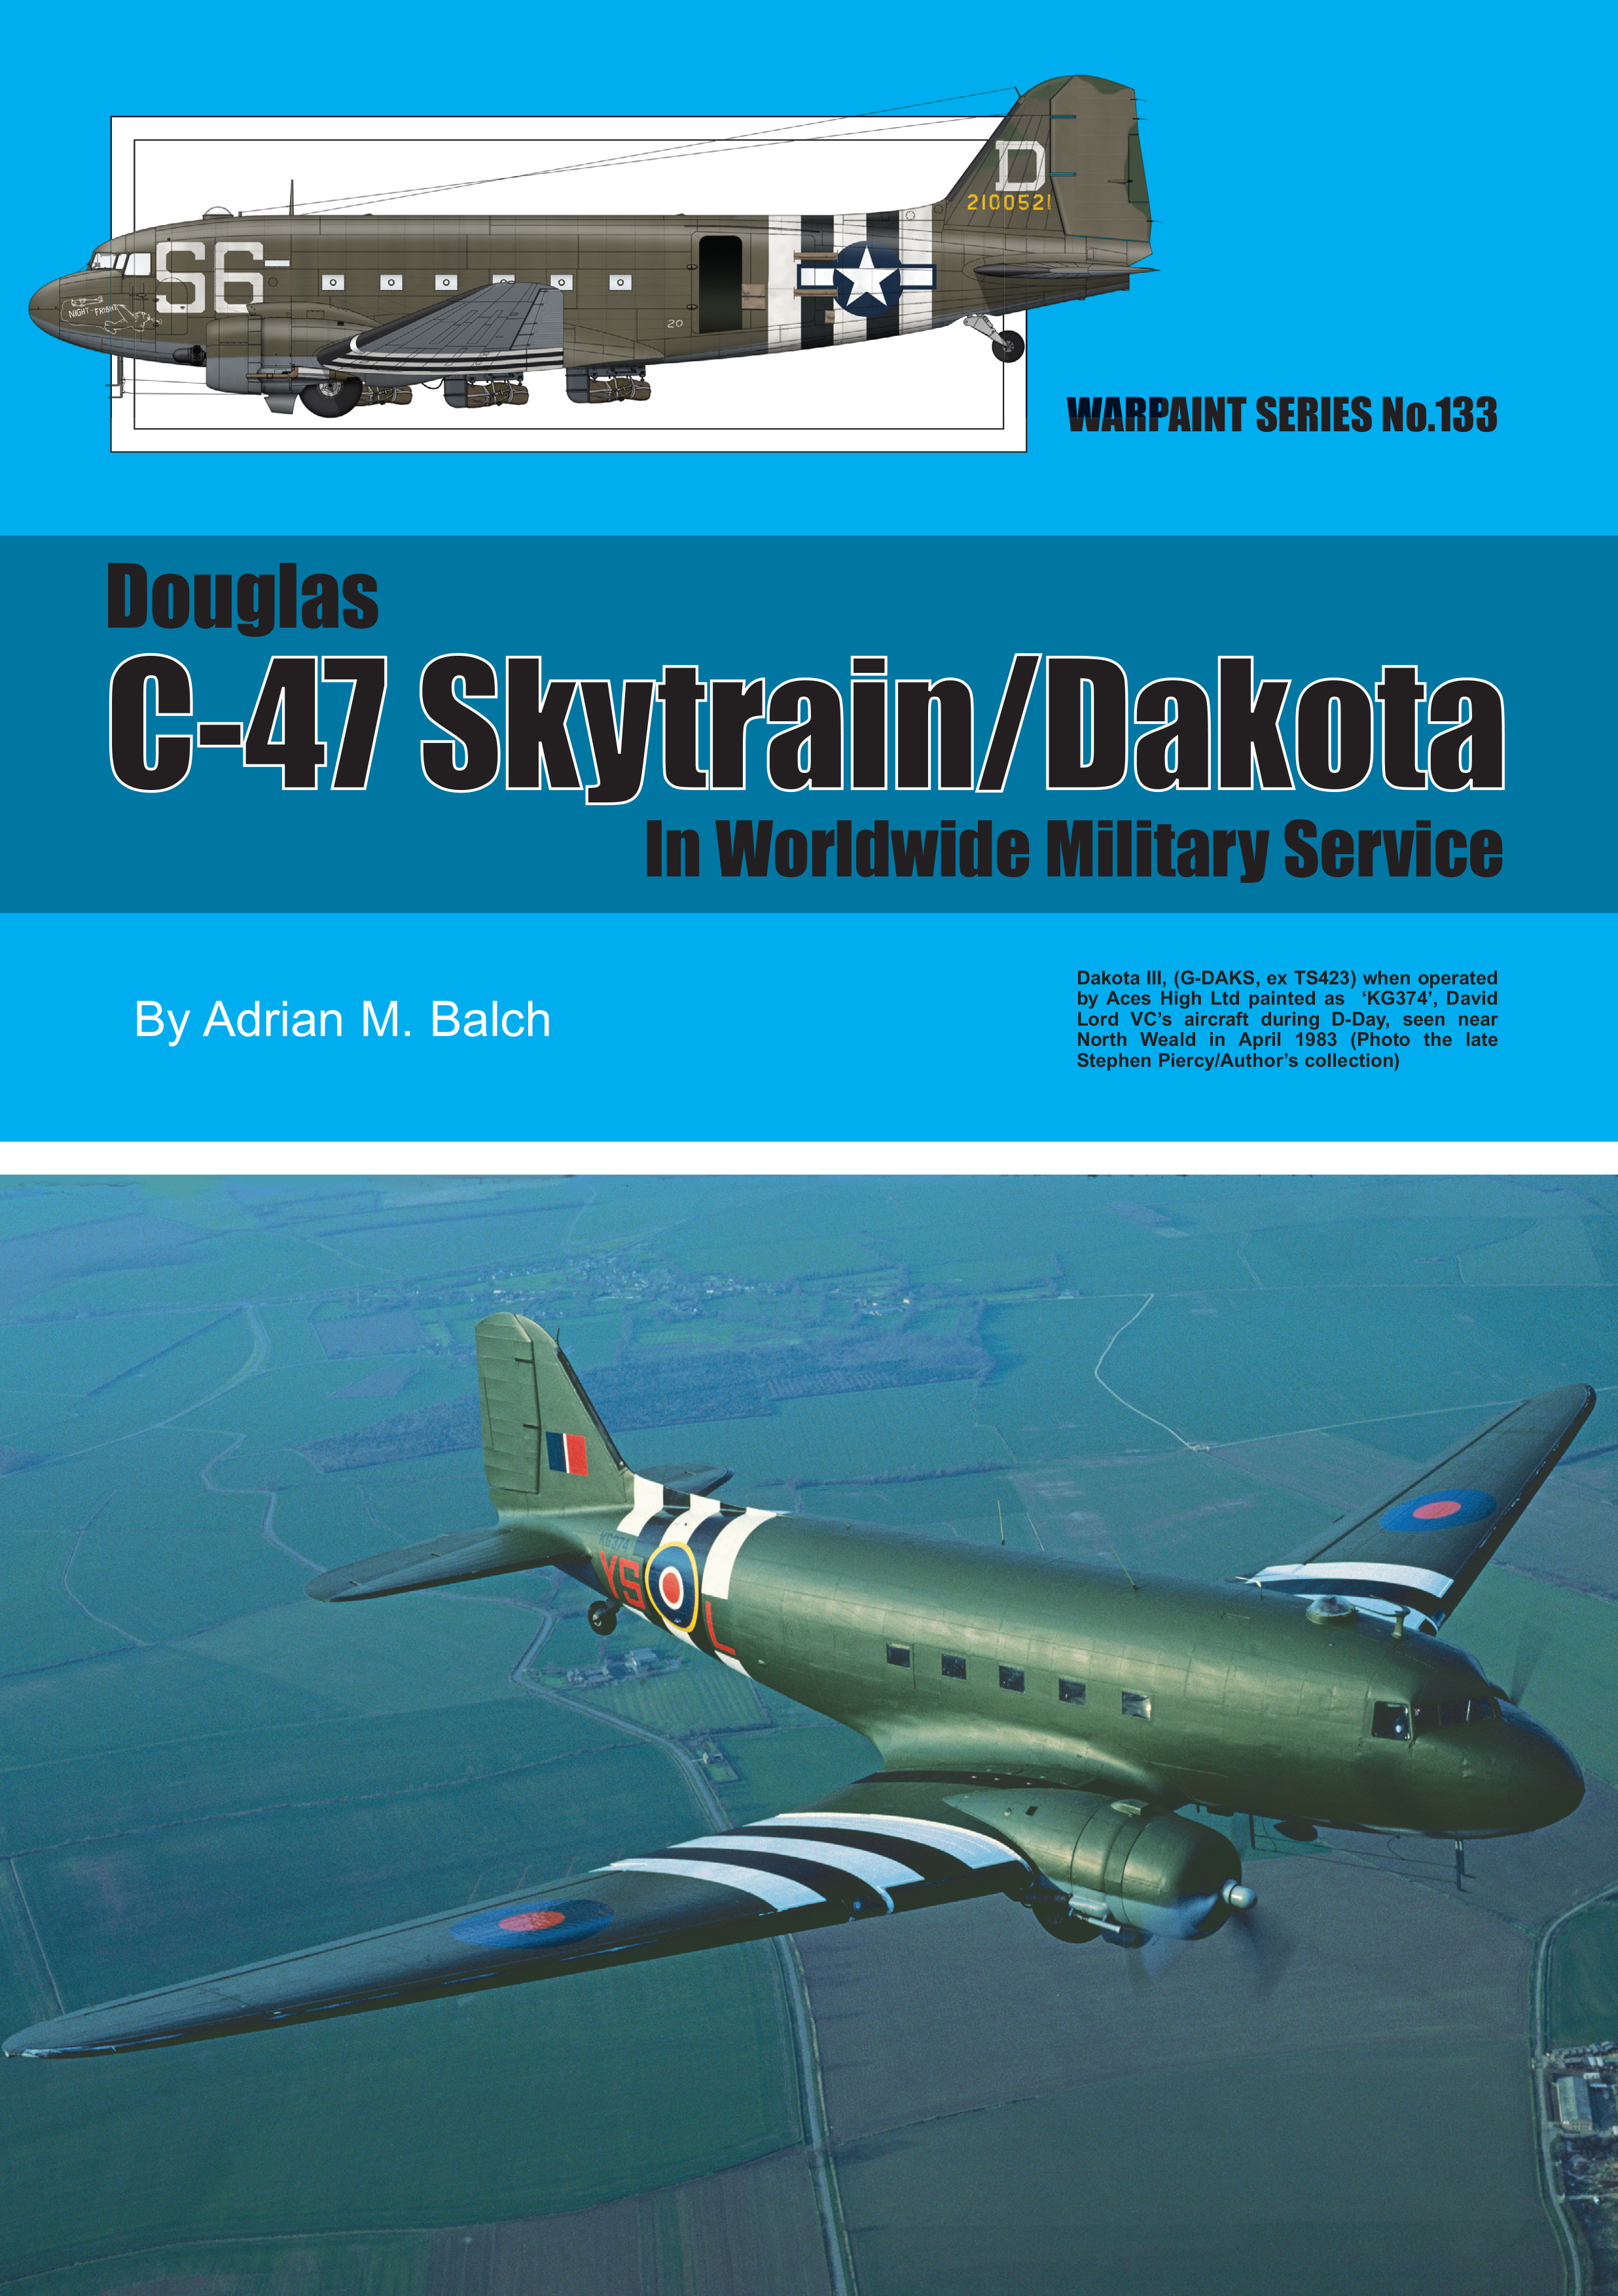 Guideline Publications Ltd Warpaint 133 - C-47 Skytrain/Dakota By Adrian M. Balch 